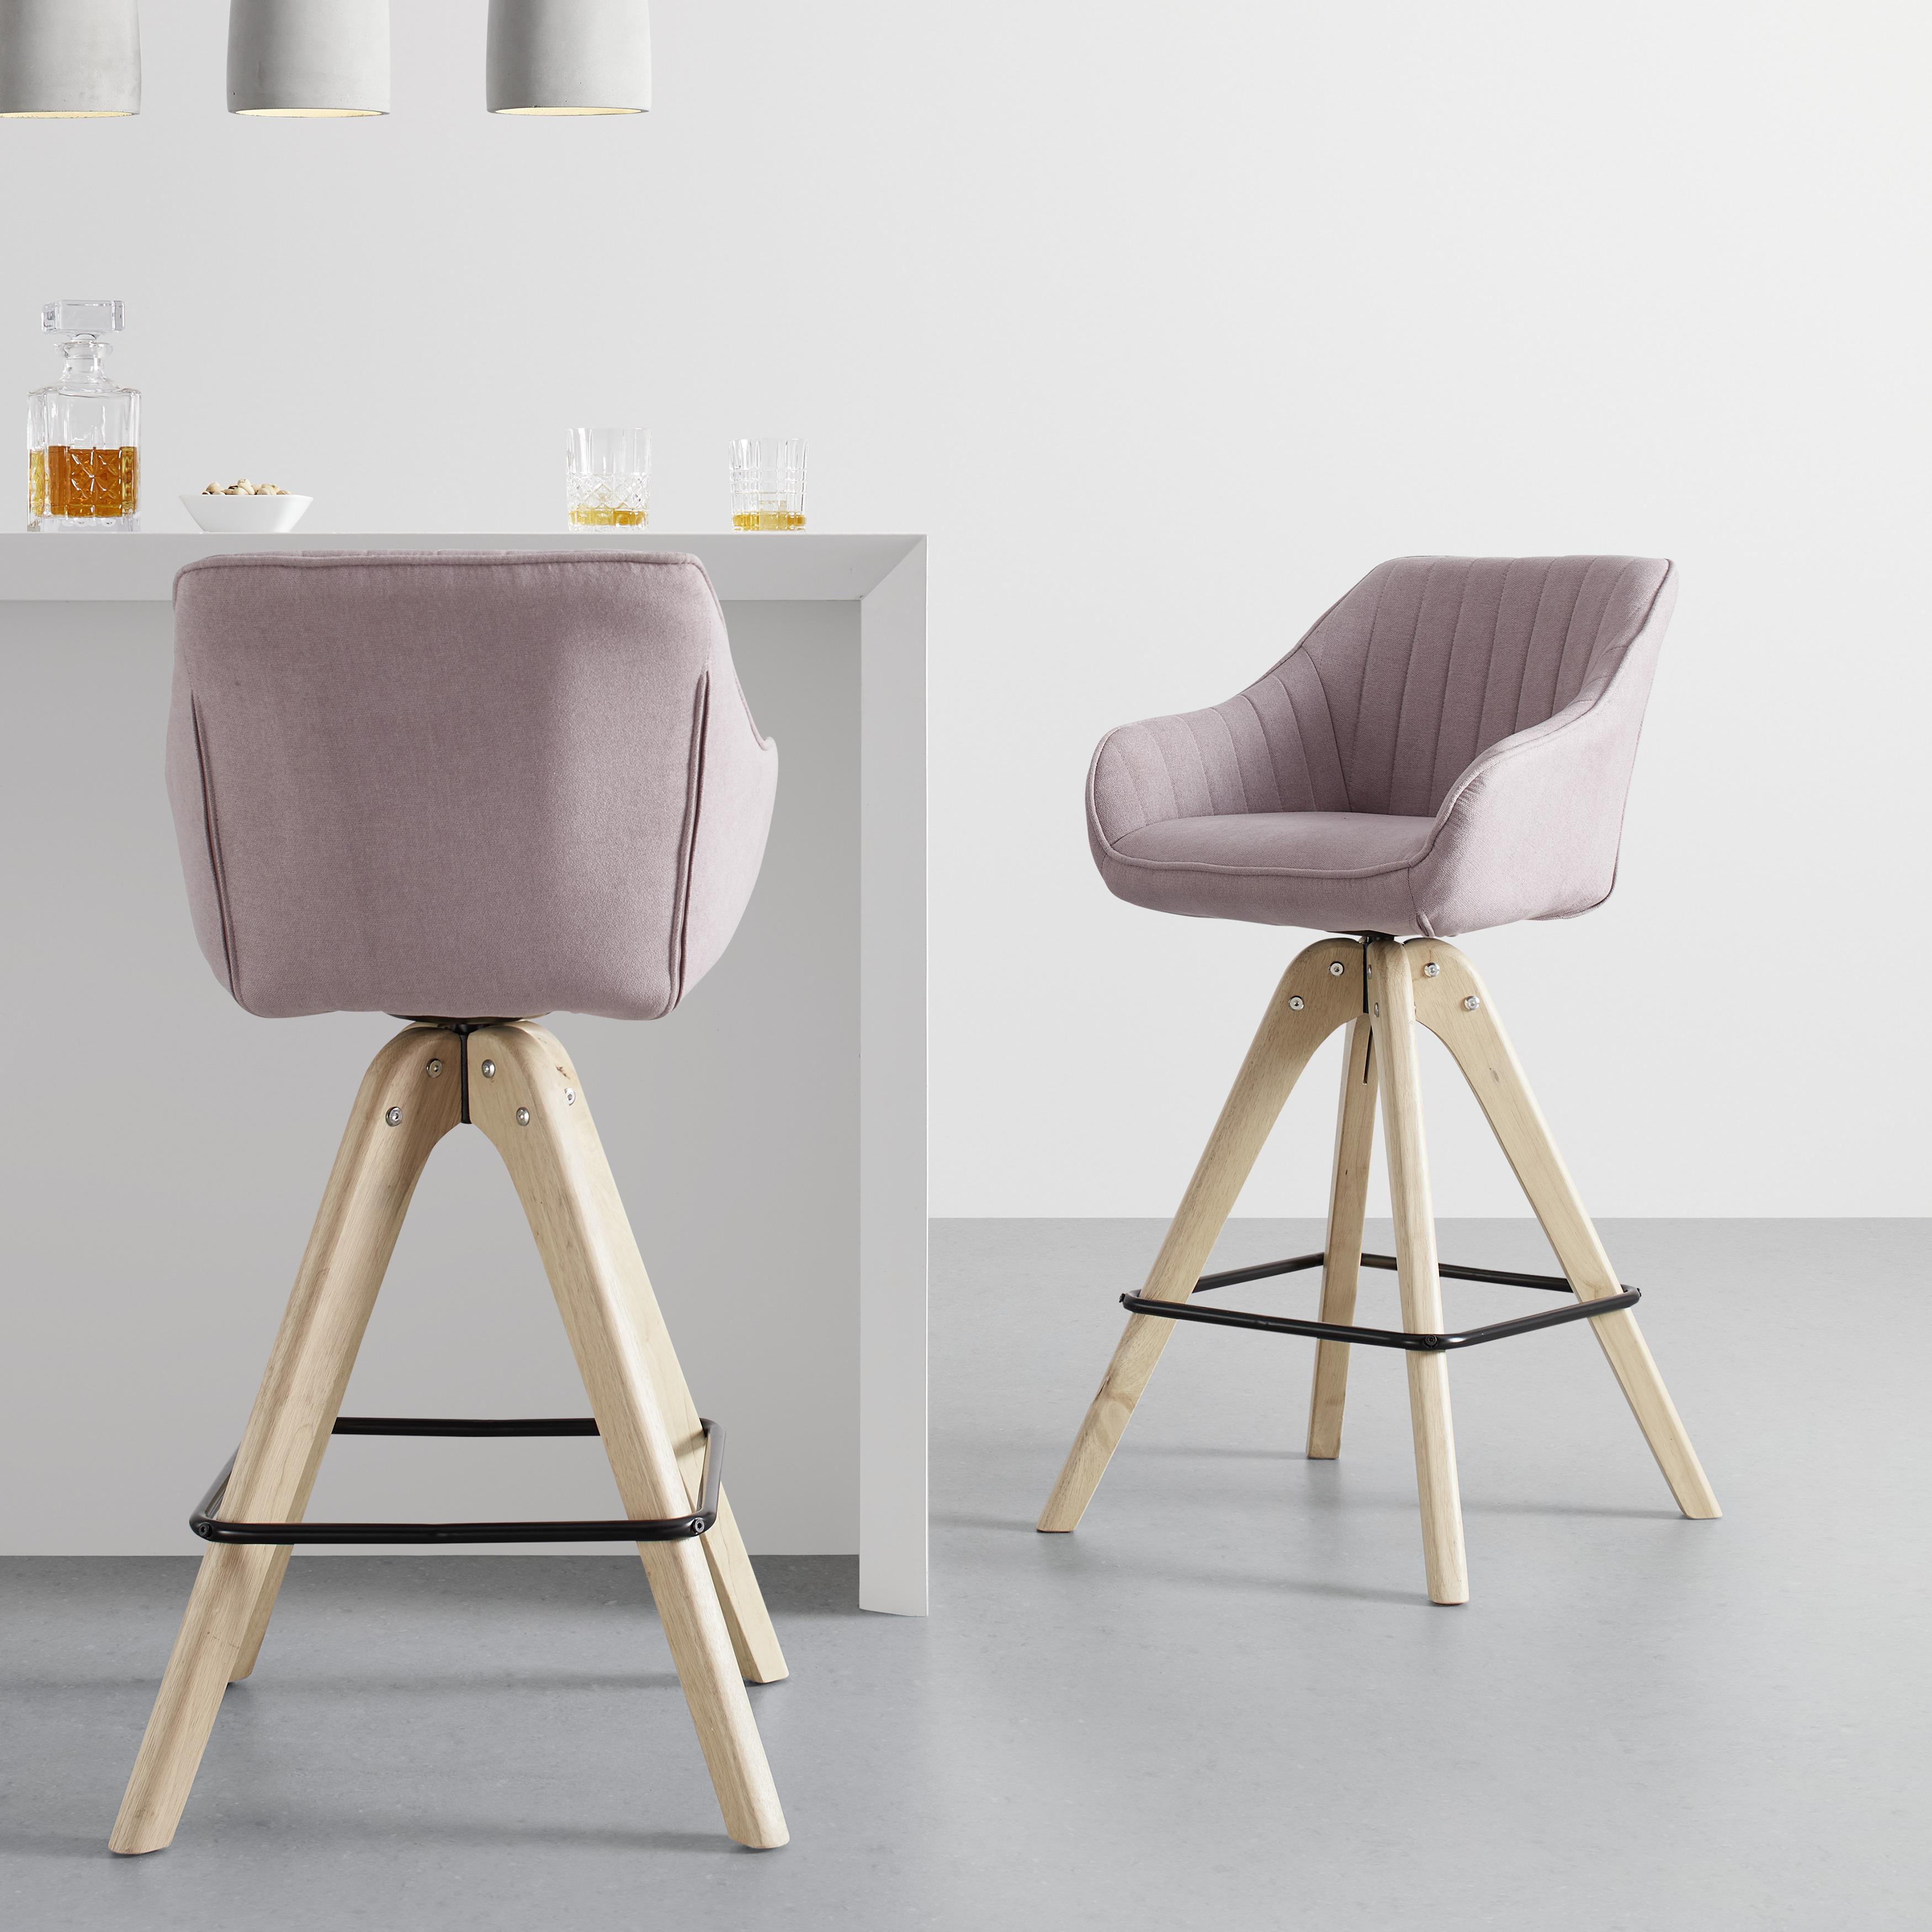 Barová Židle Leonie Otočný Sedák - růžová/barvy dubu, Moderní, kov/dřevo (55/106/56cm) - Bessagi Home